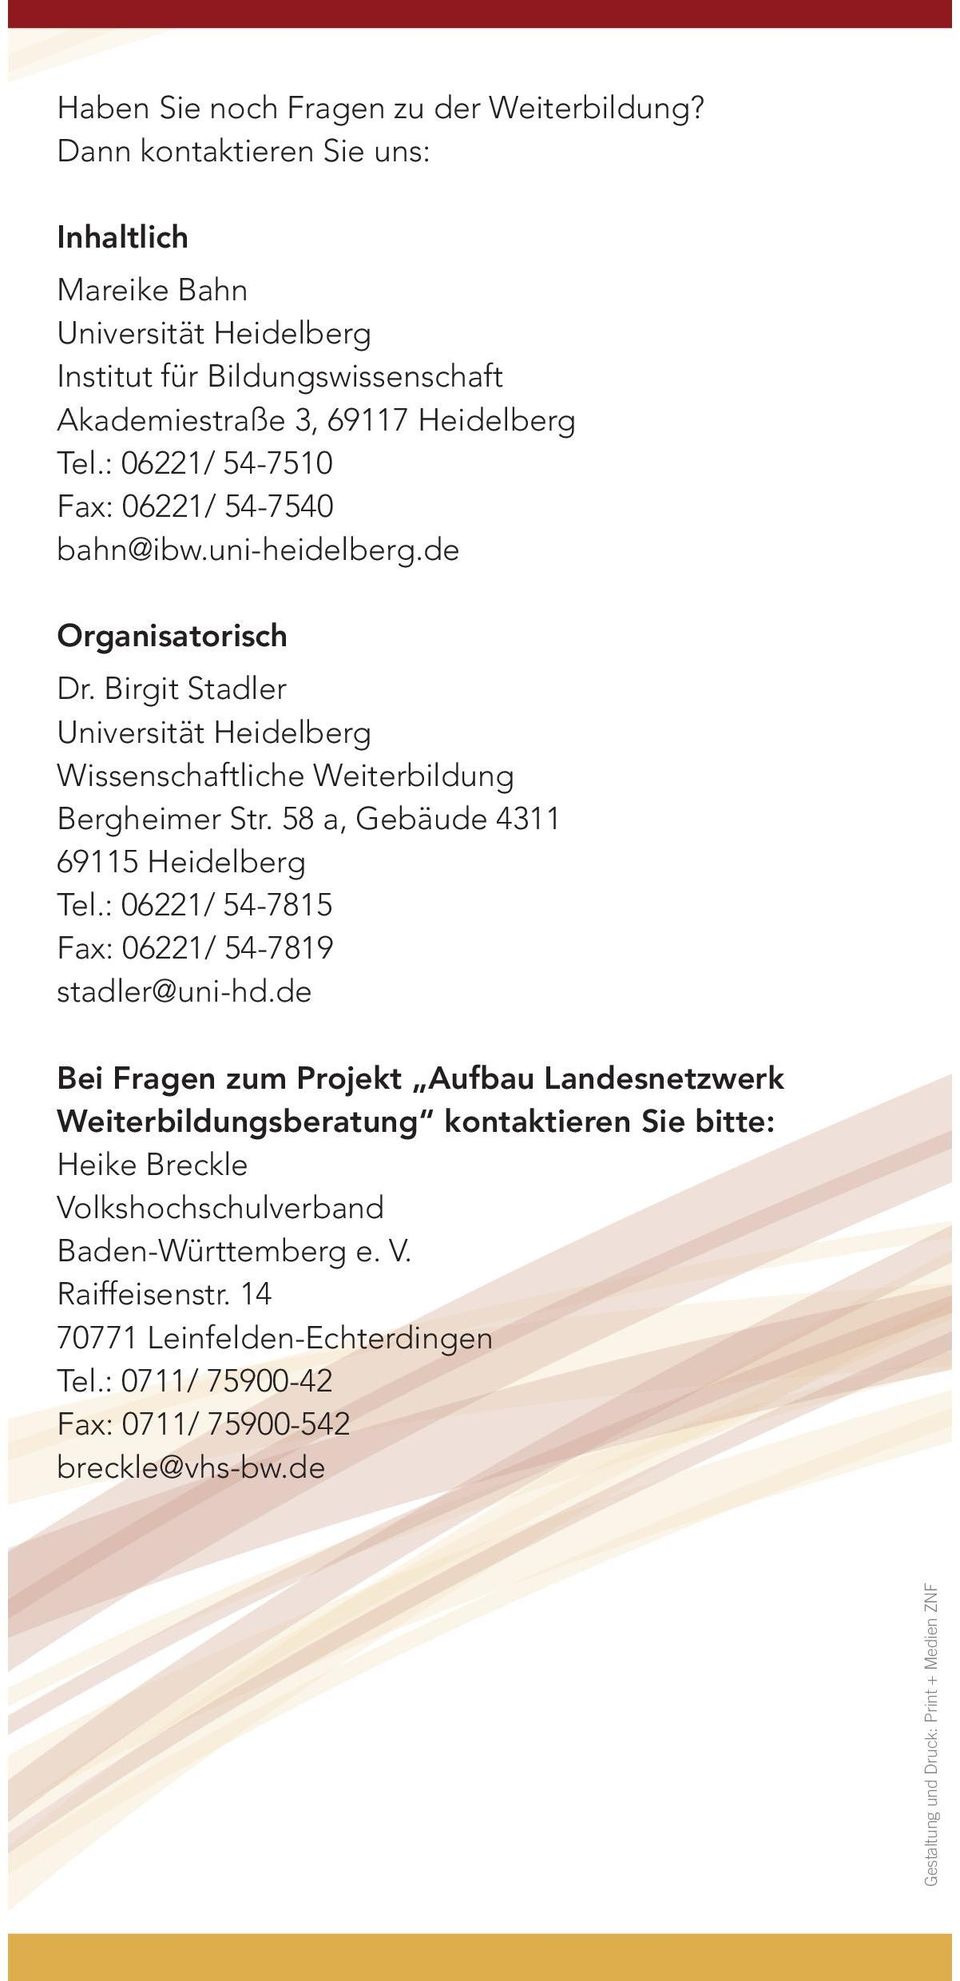 : 06221/ 54-7510 Fax: 06221/ 54-7540 bahn@ibw.uni-heidelberg.de Organisatorisch Dr. Birgit Stadler Universität Heidelberg Wissenschaftliche Weiterbildung Bergheimer Str.